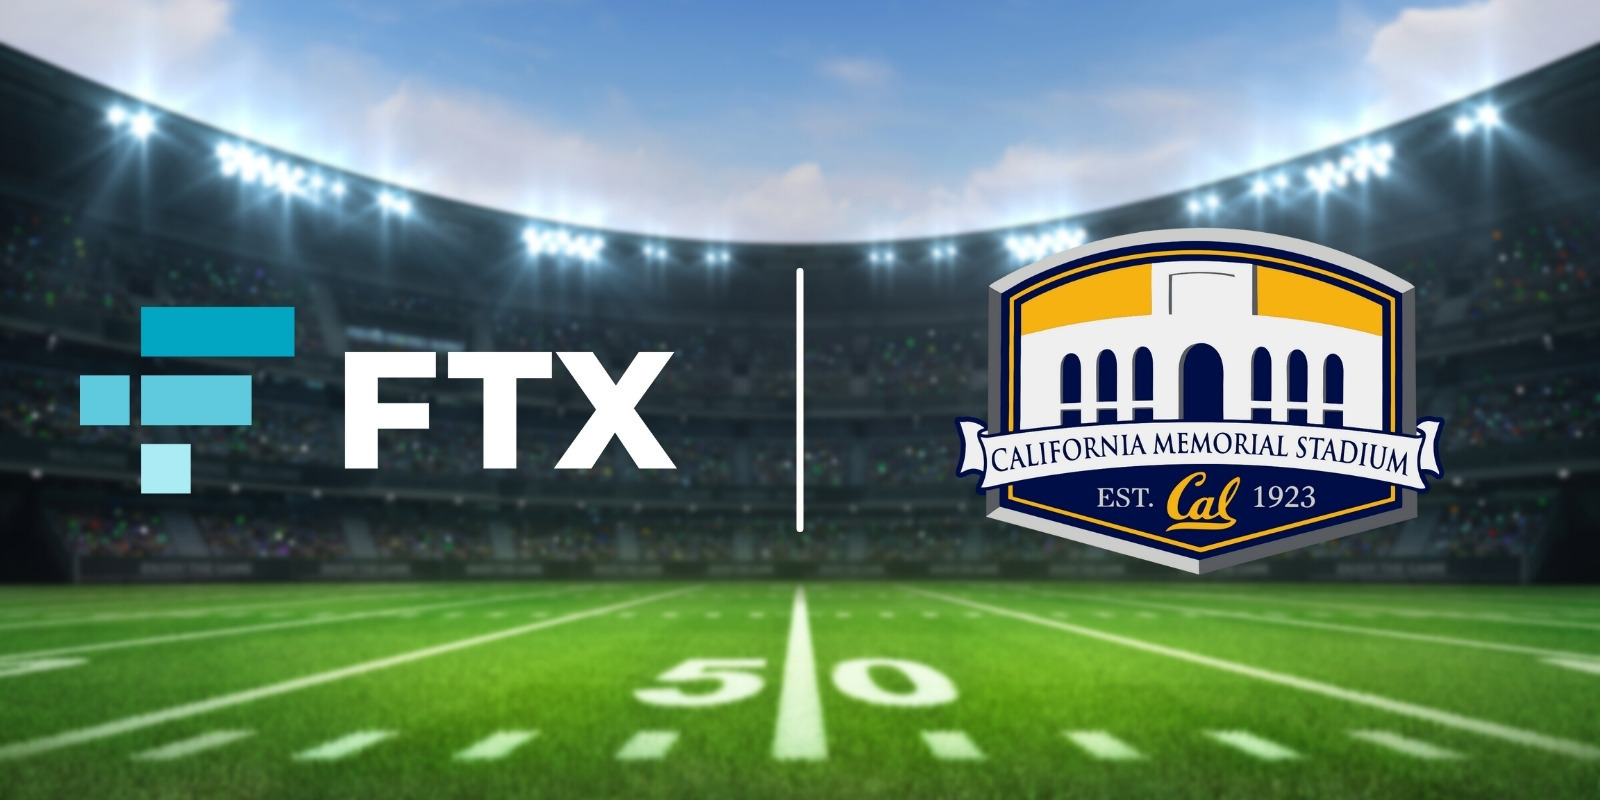 FTX achète les droits de dénomination d'un terrain sportif de l'université de Californie pour 17,5 millions de dollars